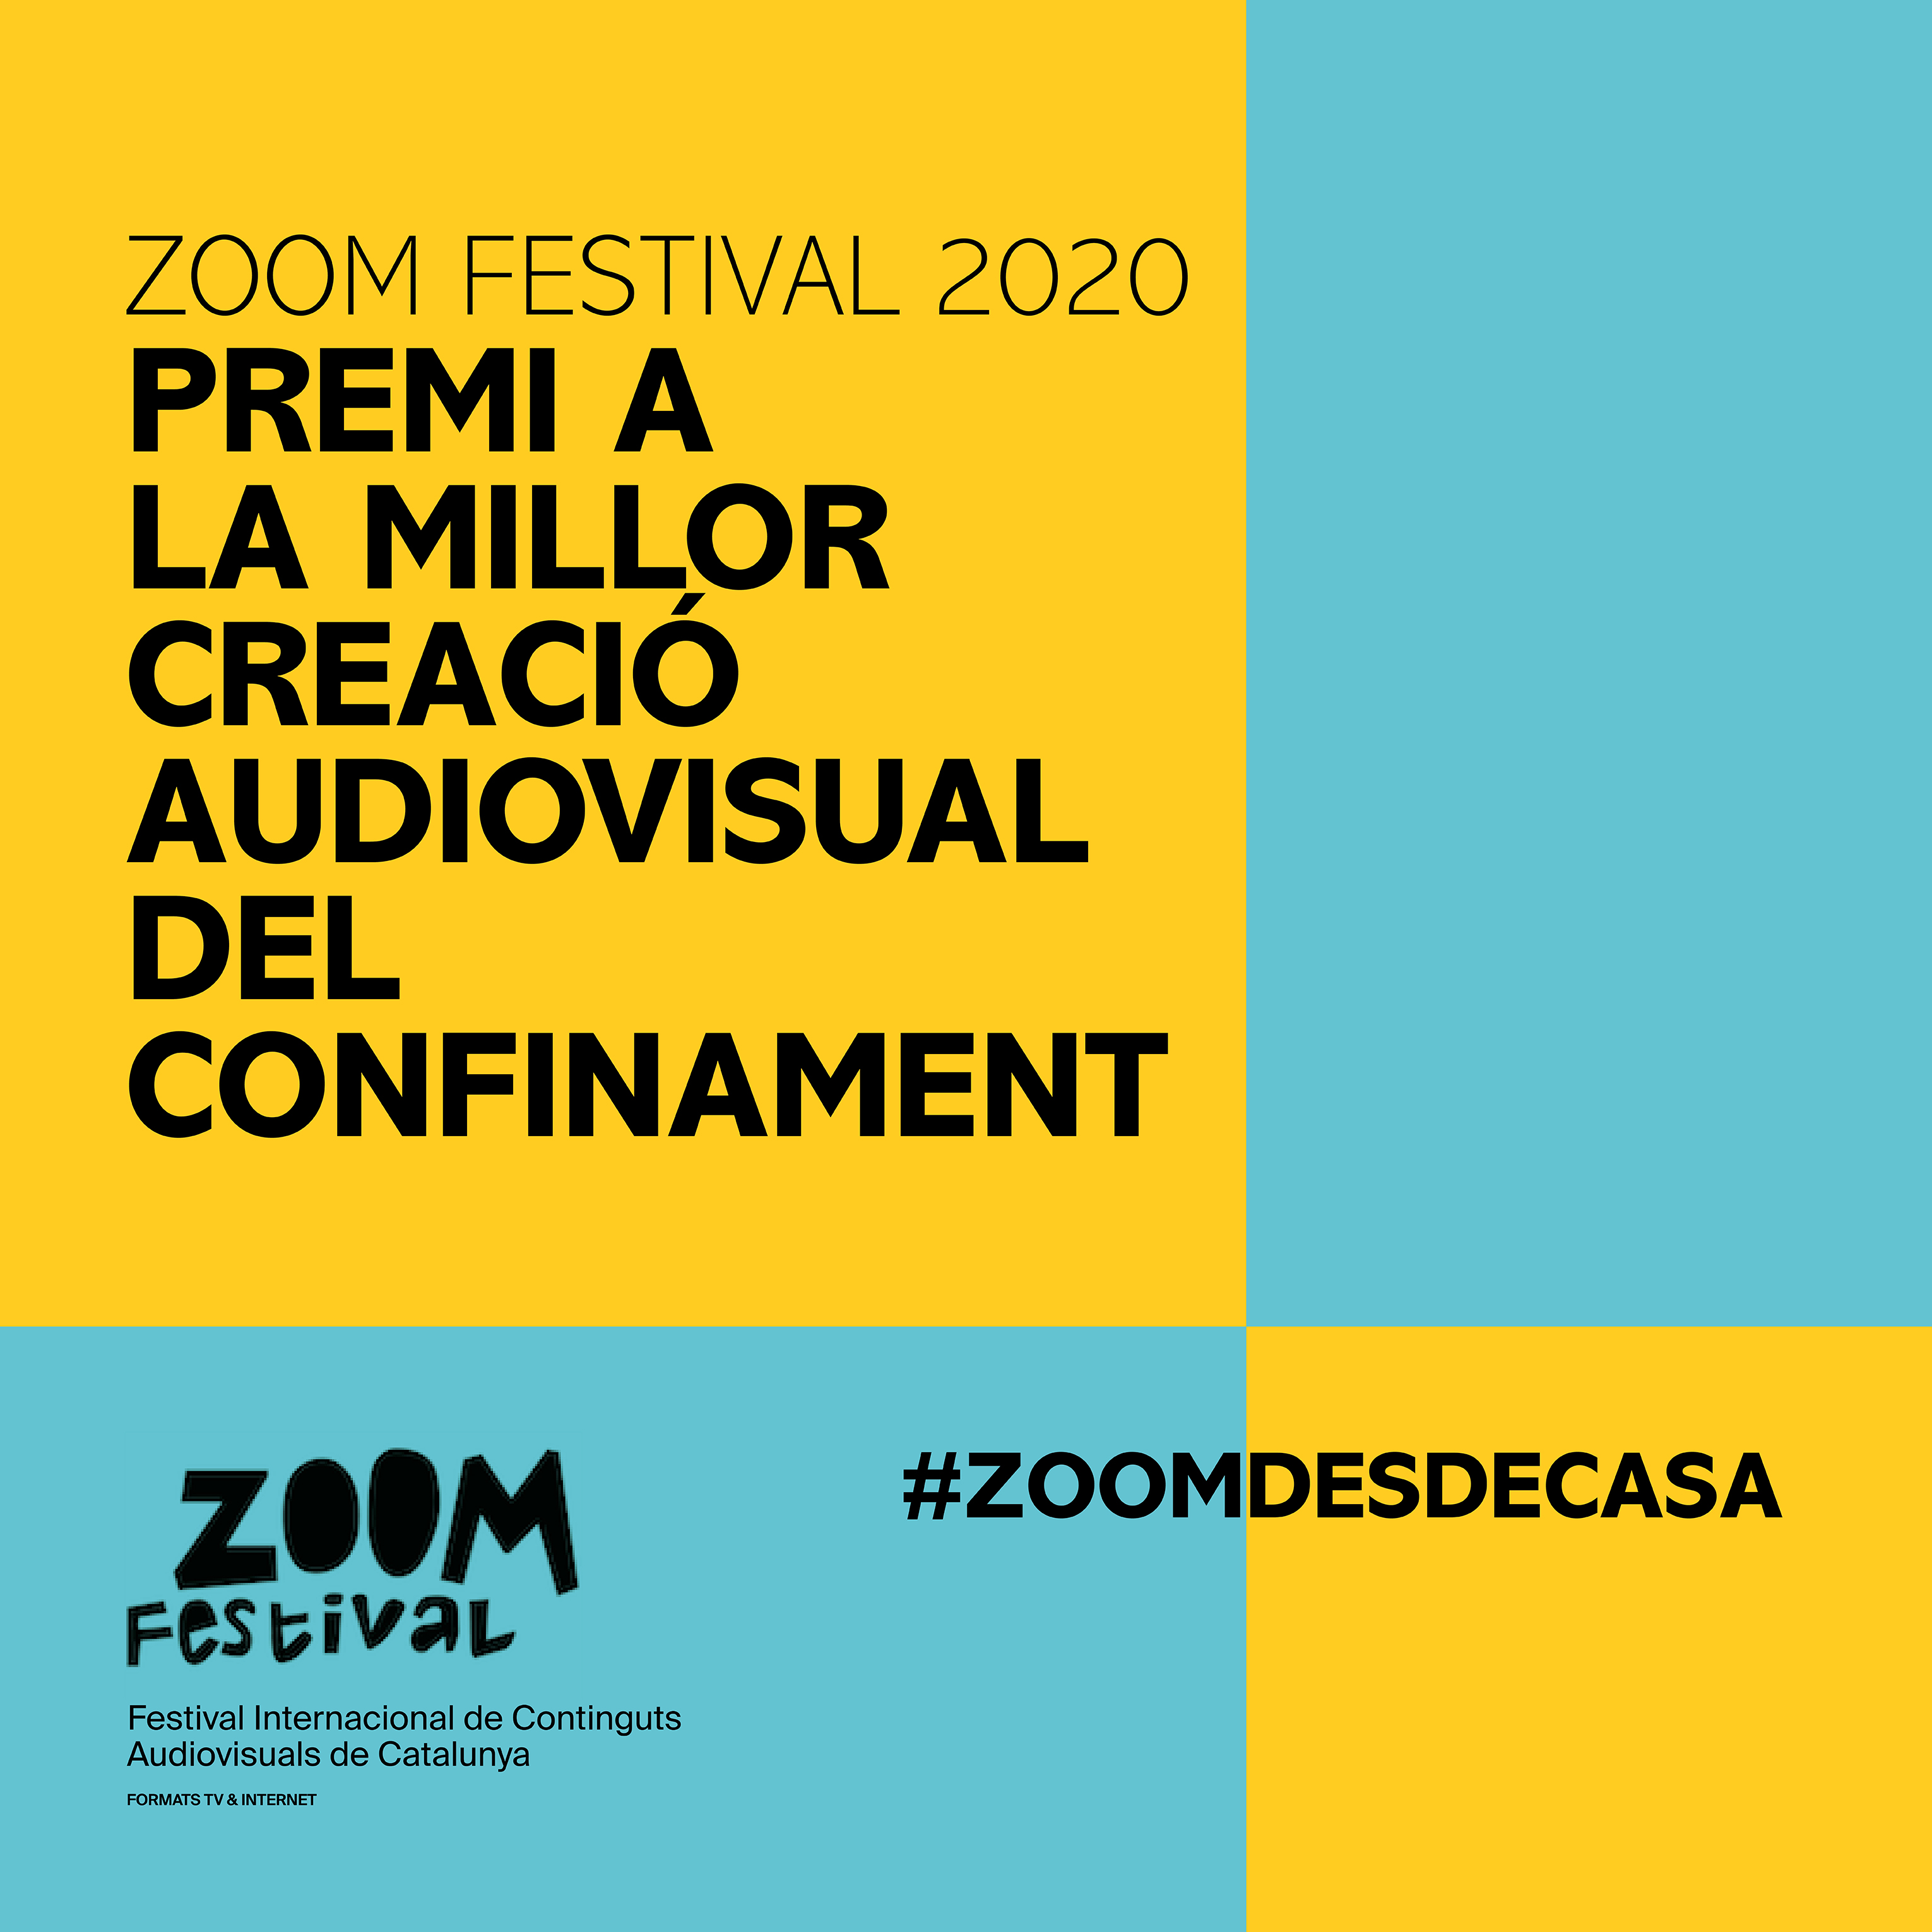 Premios #ZoomdesdeCasa Y «Confitats En Curt» De Òmnium Cultural